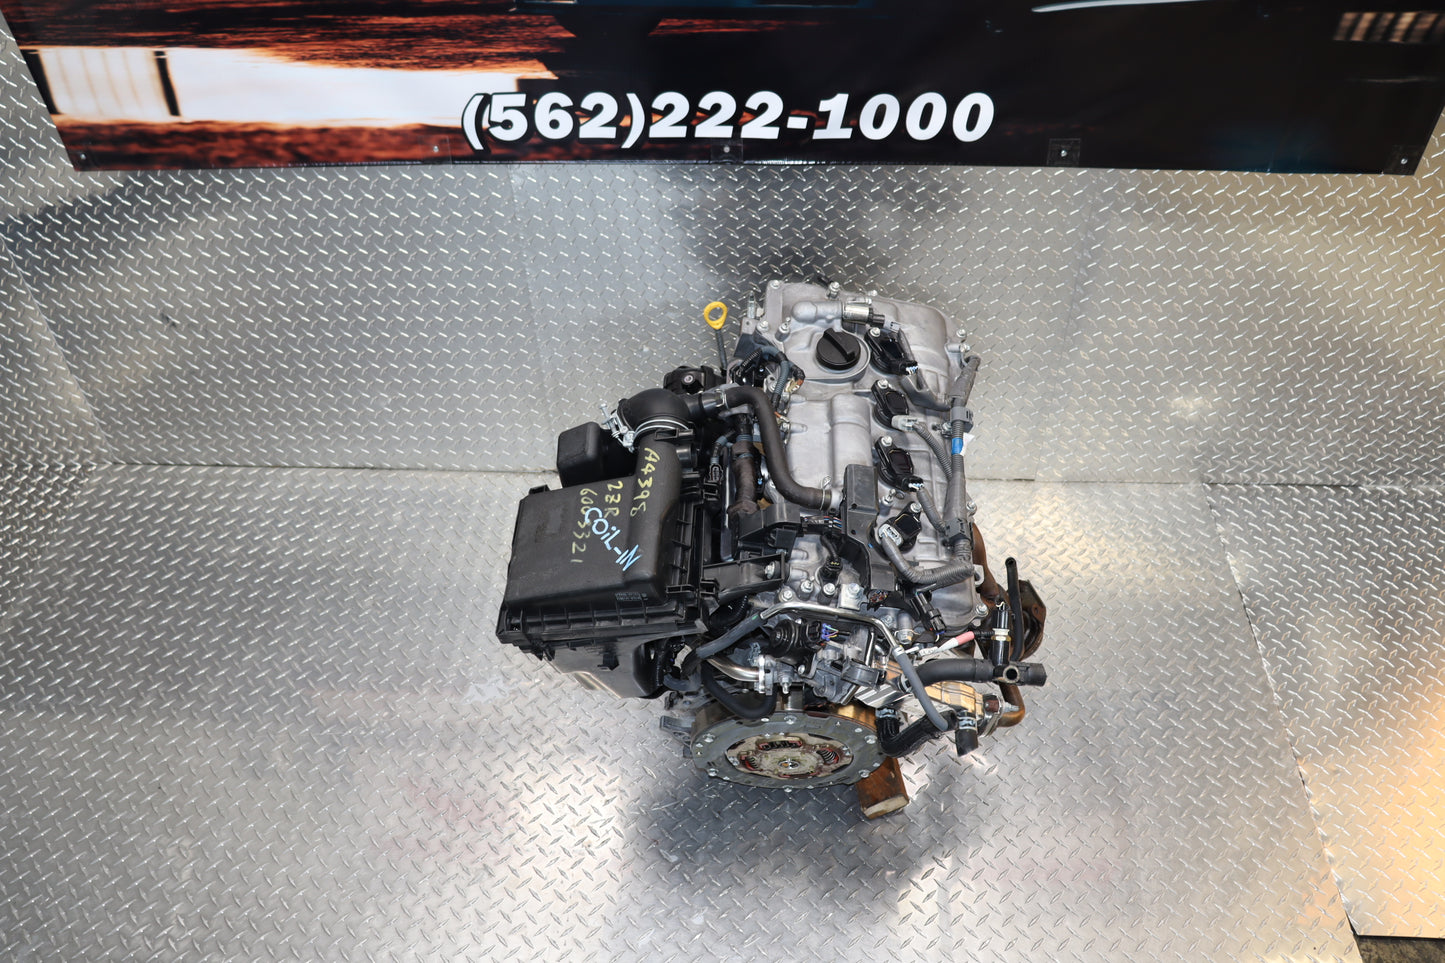 JDM 2ZR-FXE 2010-15 Toyota Prius ENGINE 1.8L 2ZR 2ZRFXE HYBRID